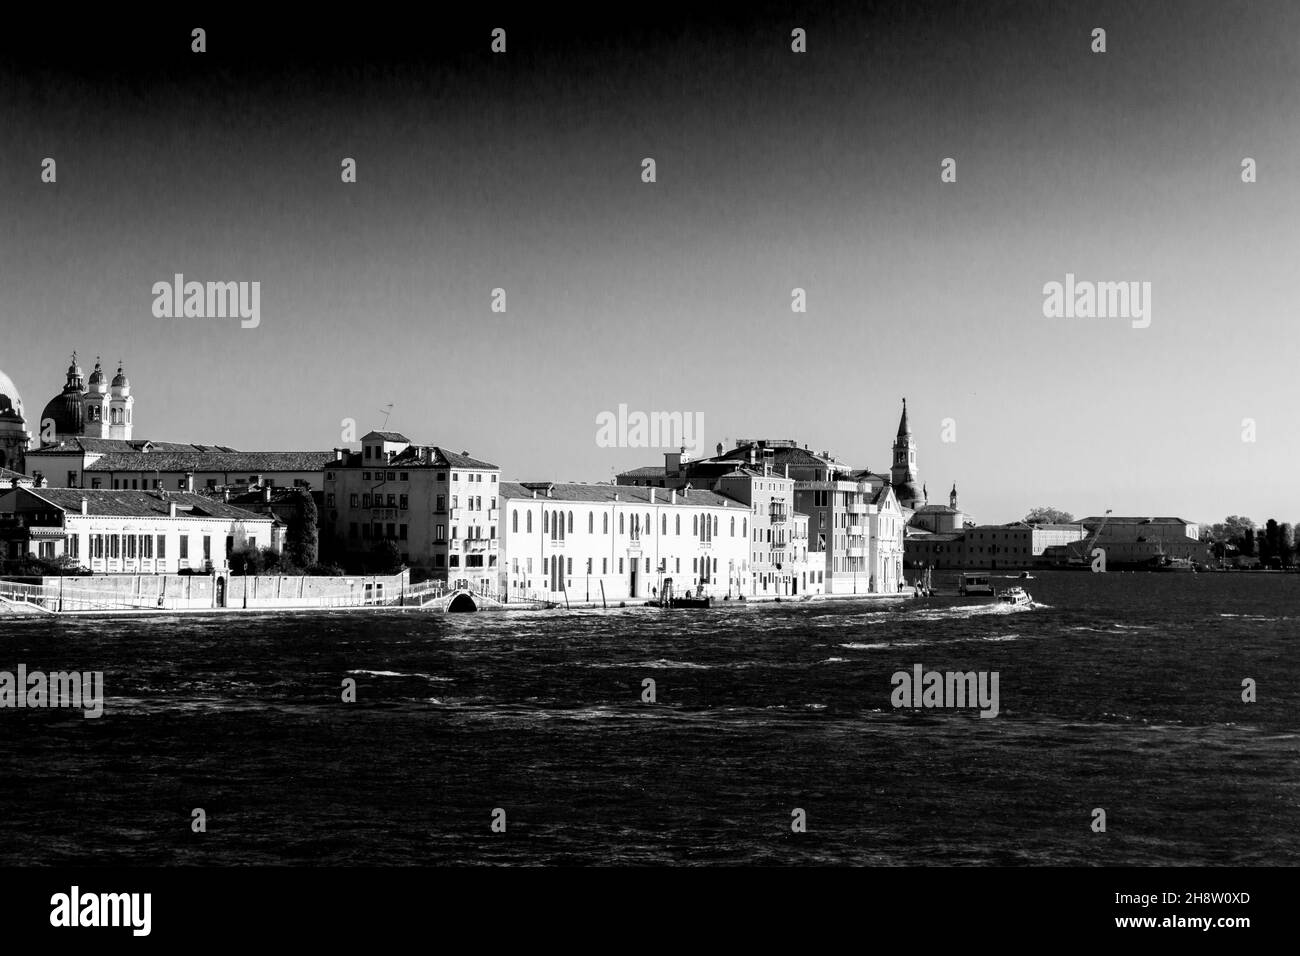 Interpretazione artistica in bianco e nero di un paesaggio classico a Venezia, con edifici sul fiume. Quartiere Zattere. Vista dal canale Giudecca Foto Stock